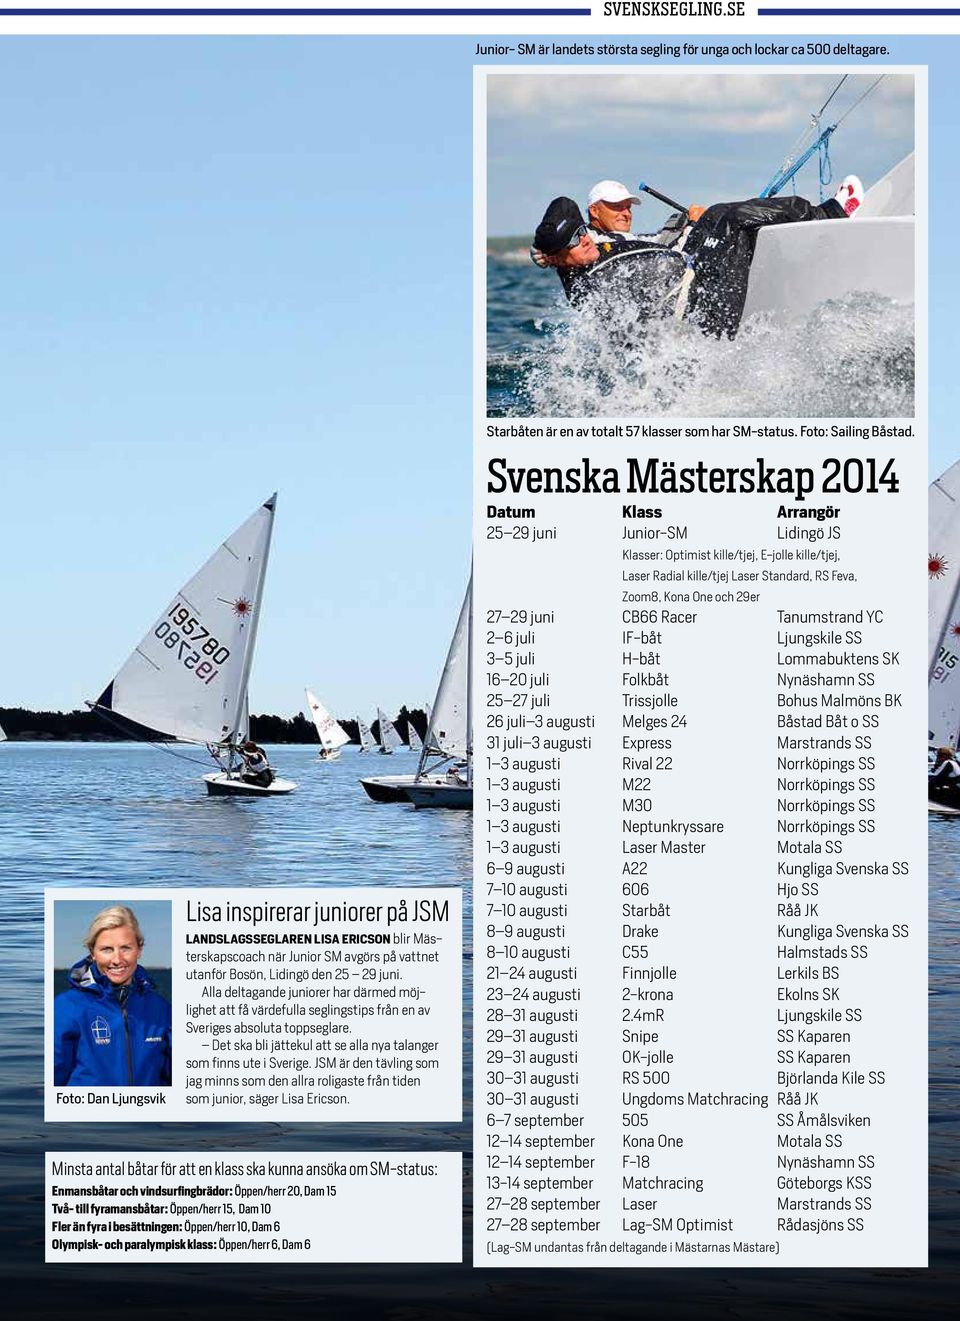 Alla deltagande juniorer har därmed möjlighet att få värdefulla seglingstips från en av Sveriges absoluta toppseglare. Det ska bli jättekul att se alla nya talanger som finns ute i Sverige.